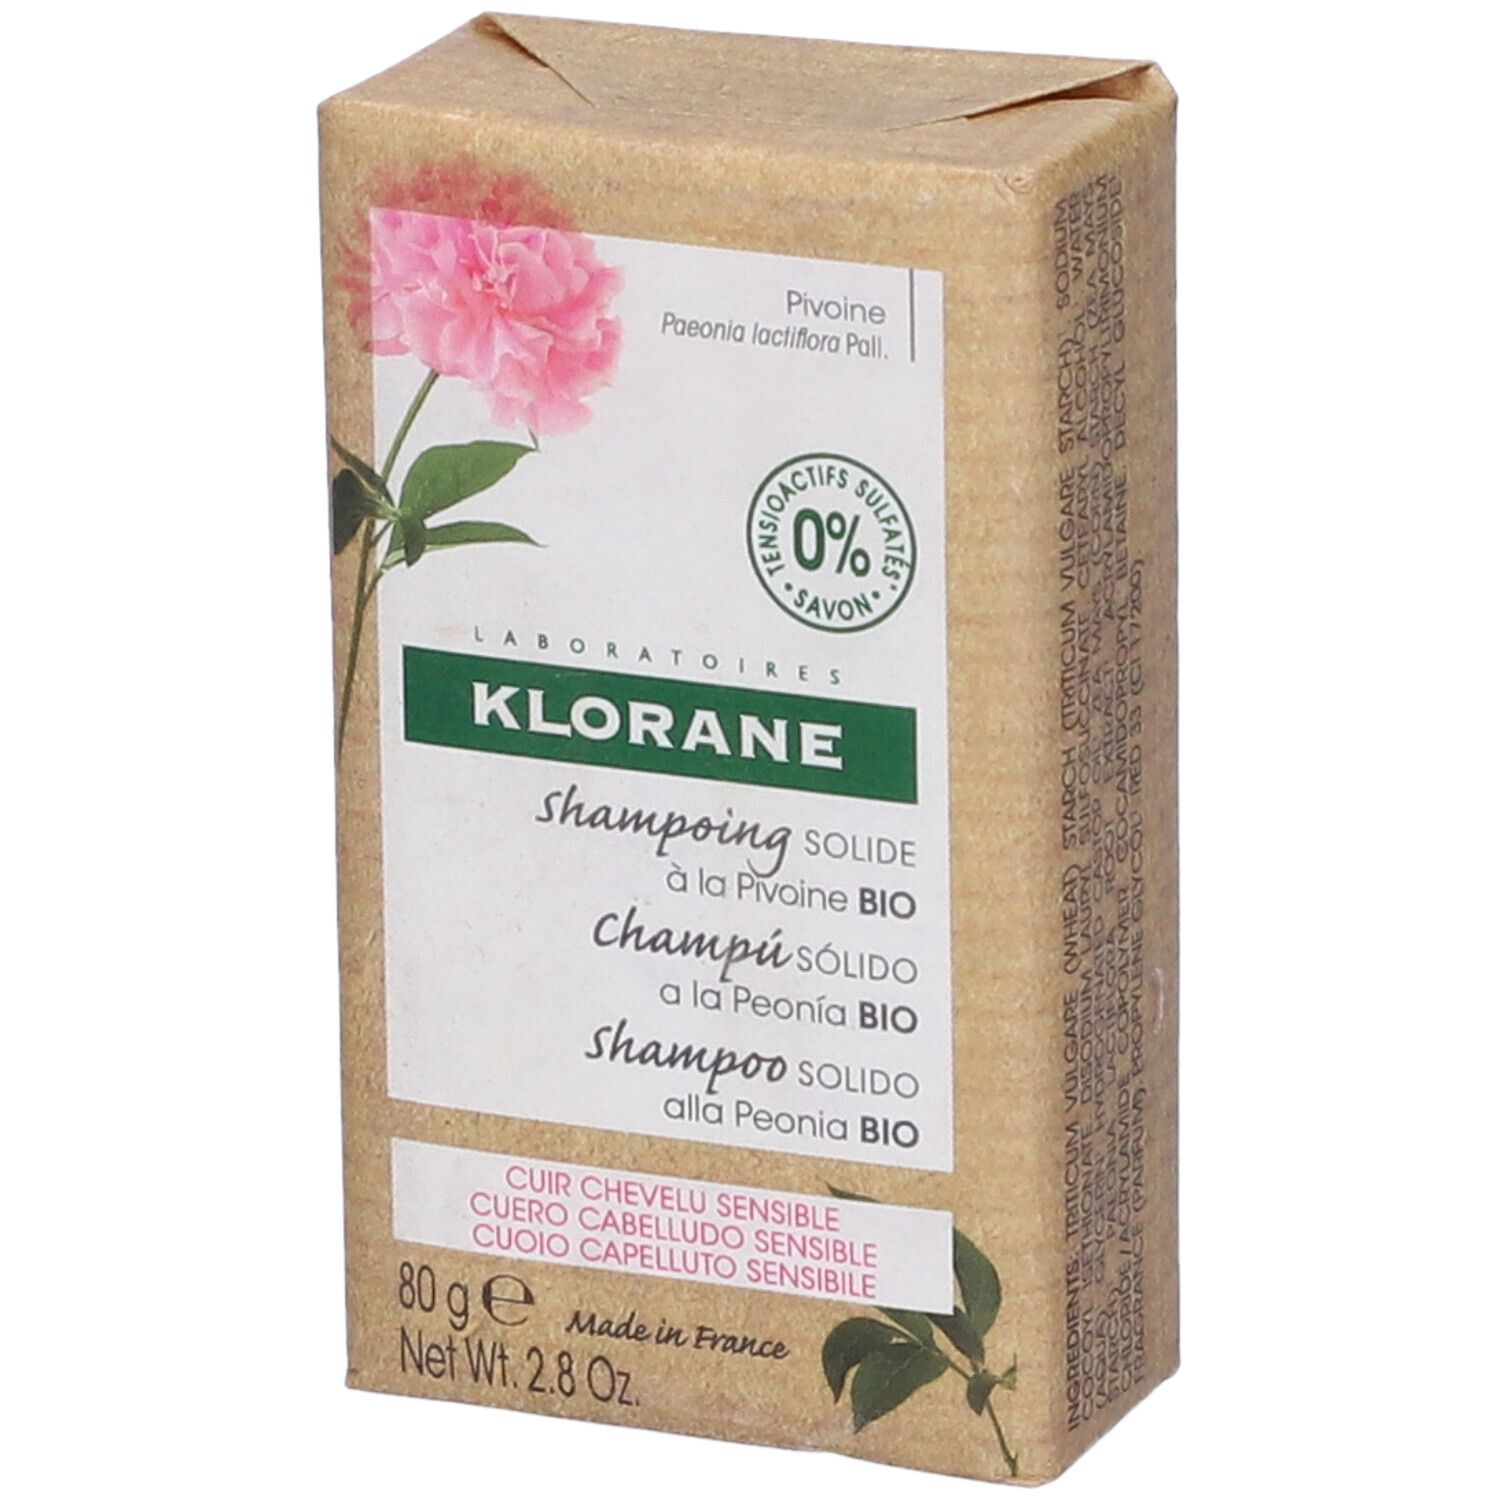 Image of KLORANE Shampoo Solido alla Peonia BIO